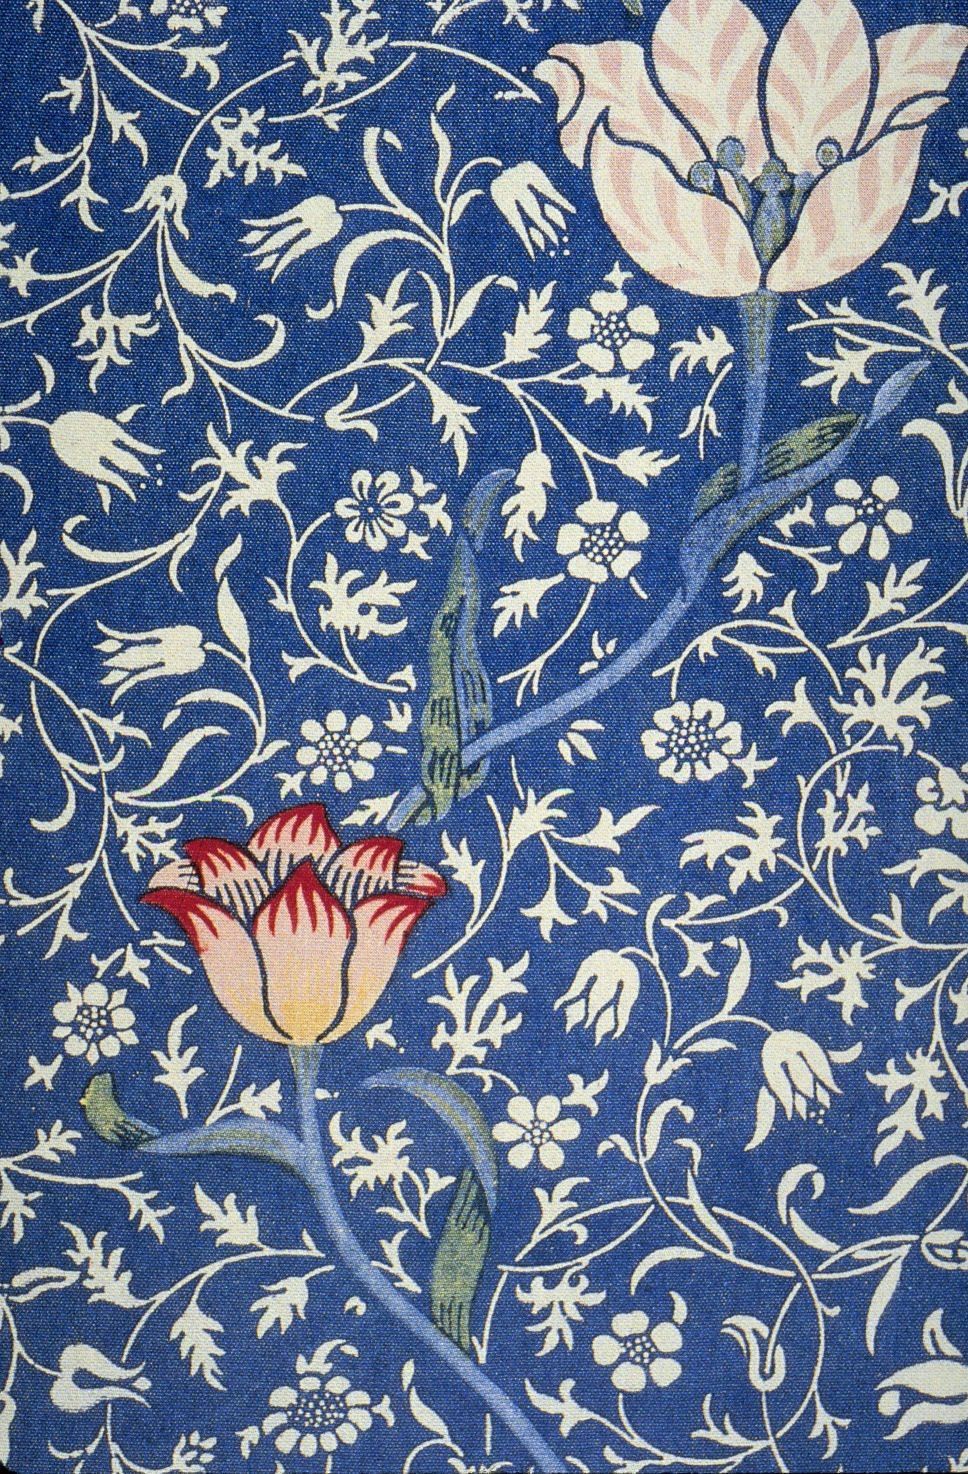 William Morris. William morris art, William morris wallpaper, William morris designs